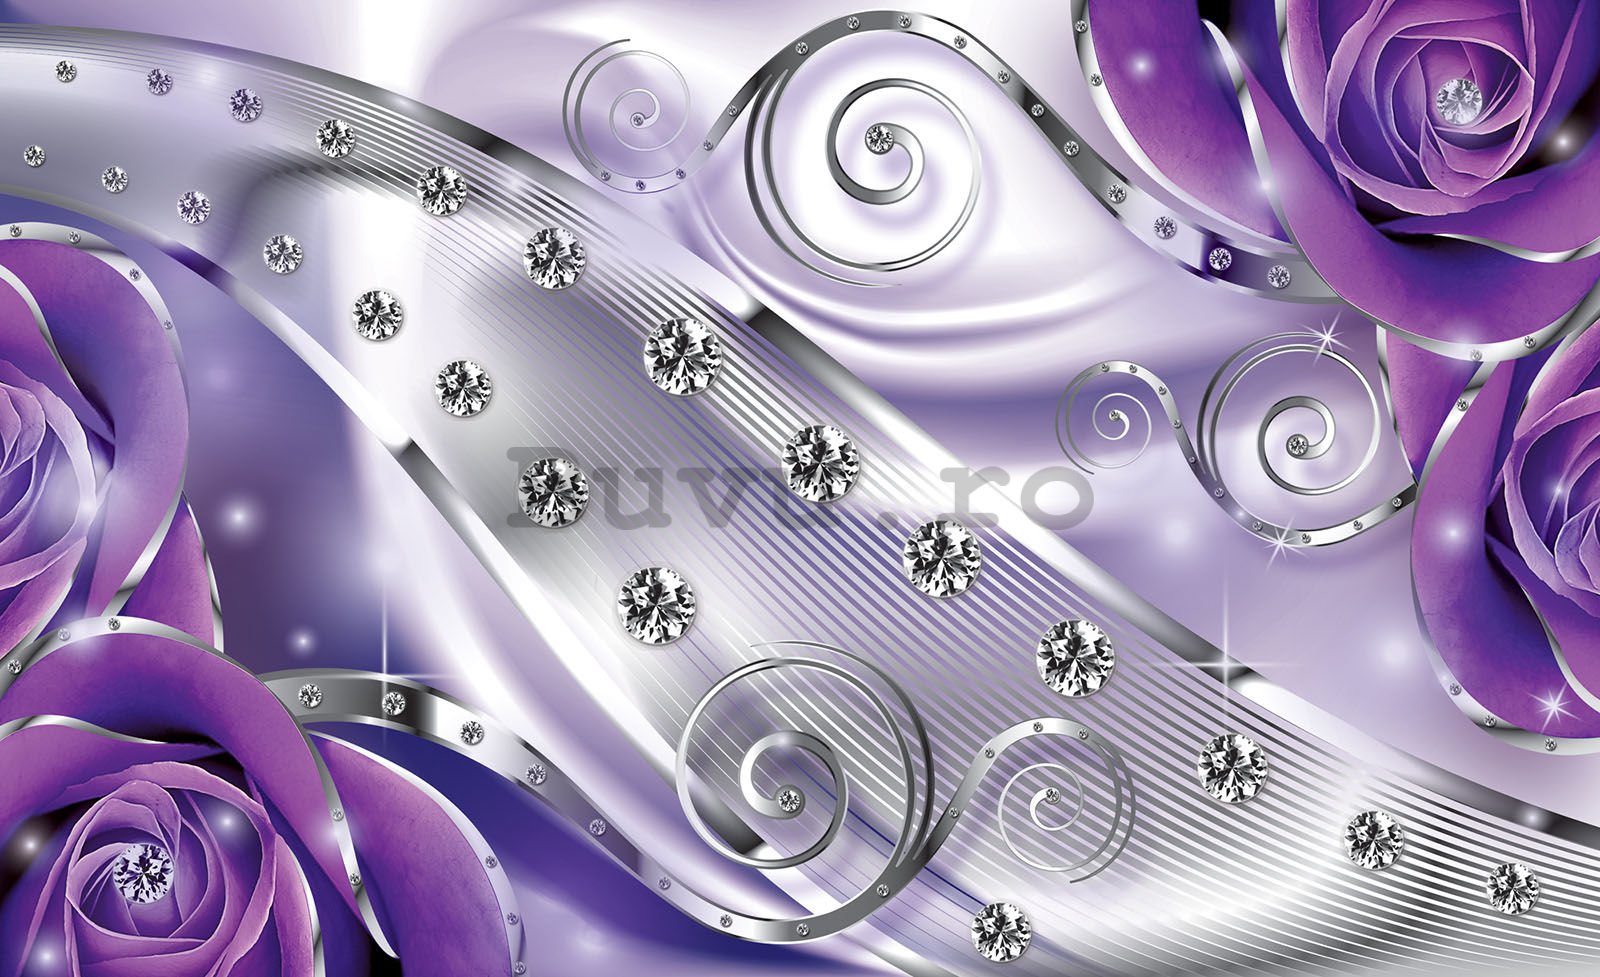 Fototapet: Abstractizare de lux (violet) - 254x184 cm